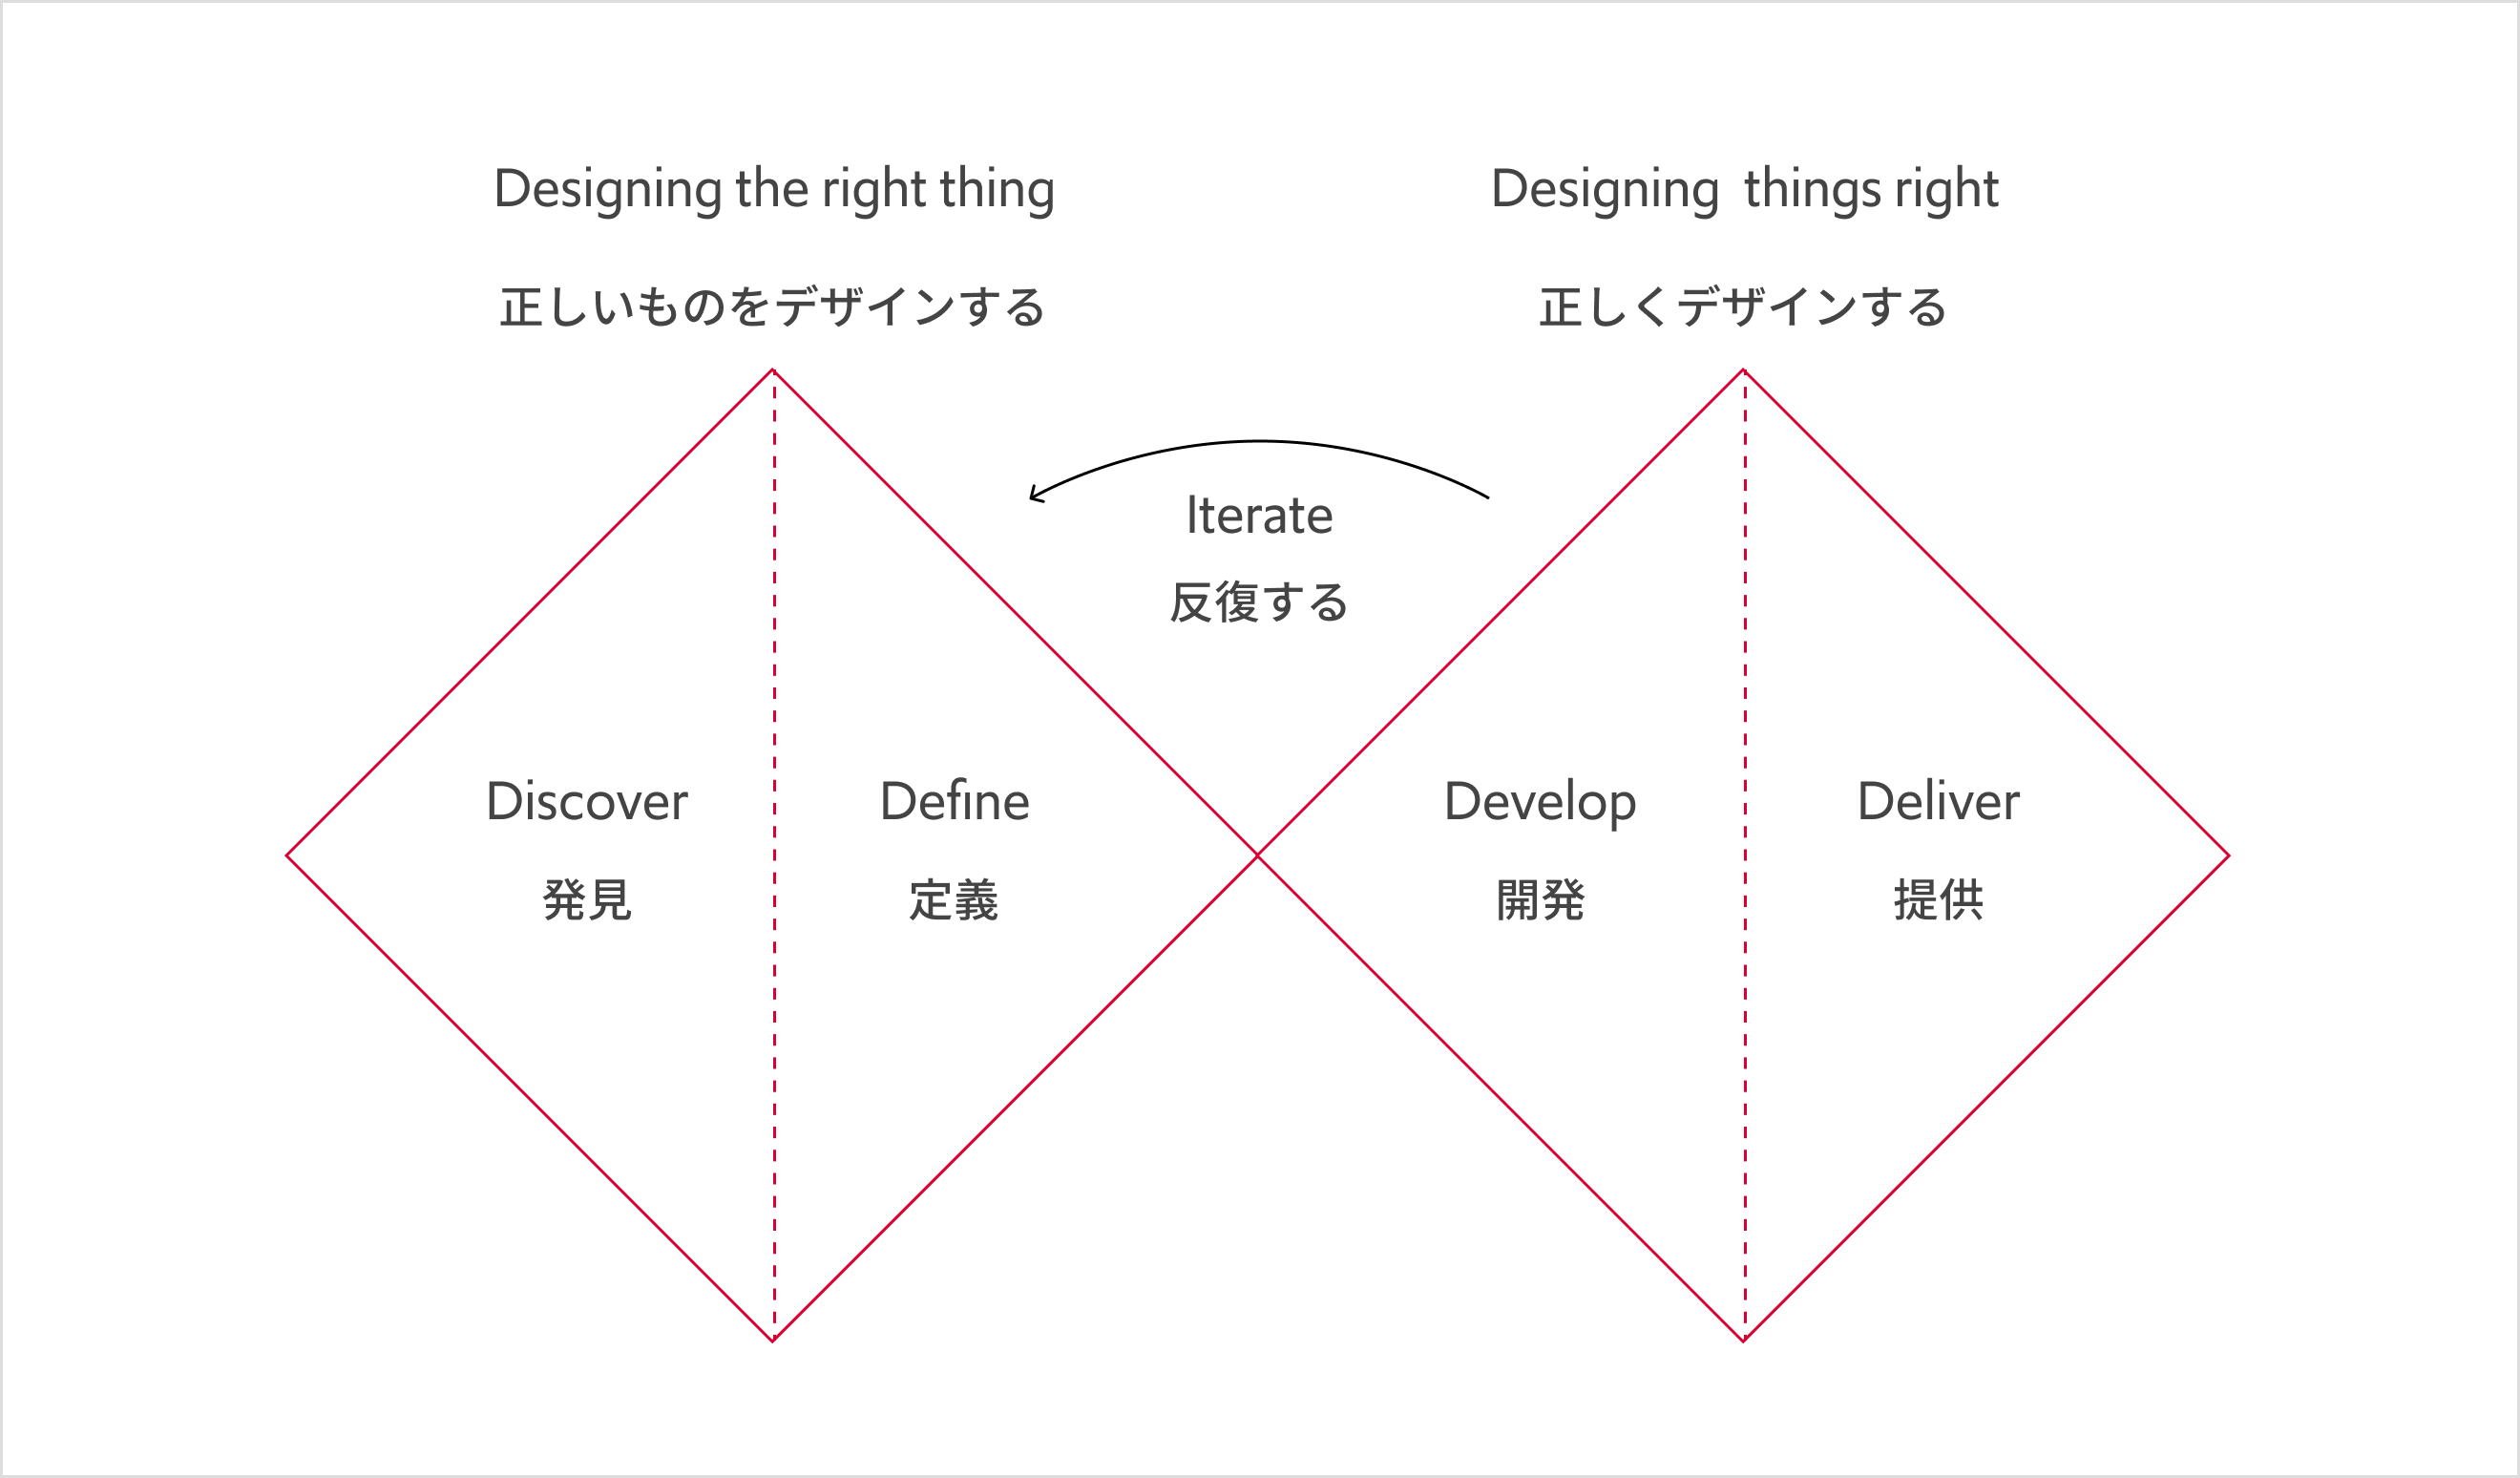 デザインプロセスモデル・ダブルダイヤモンド